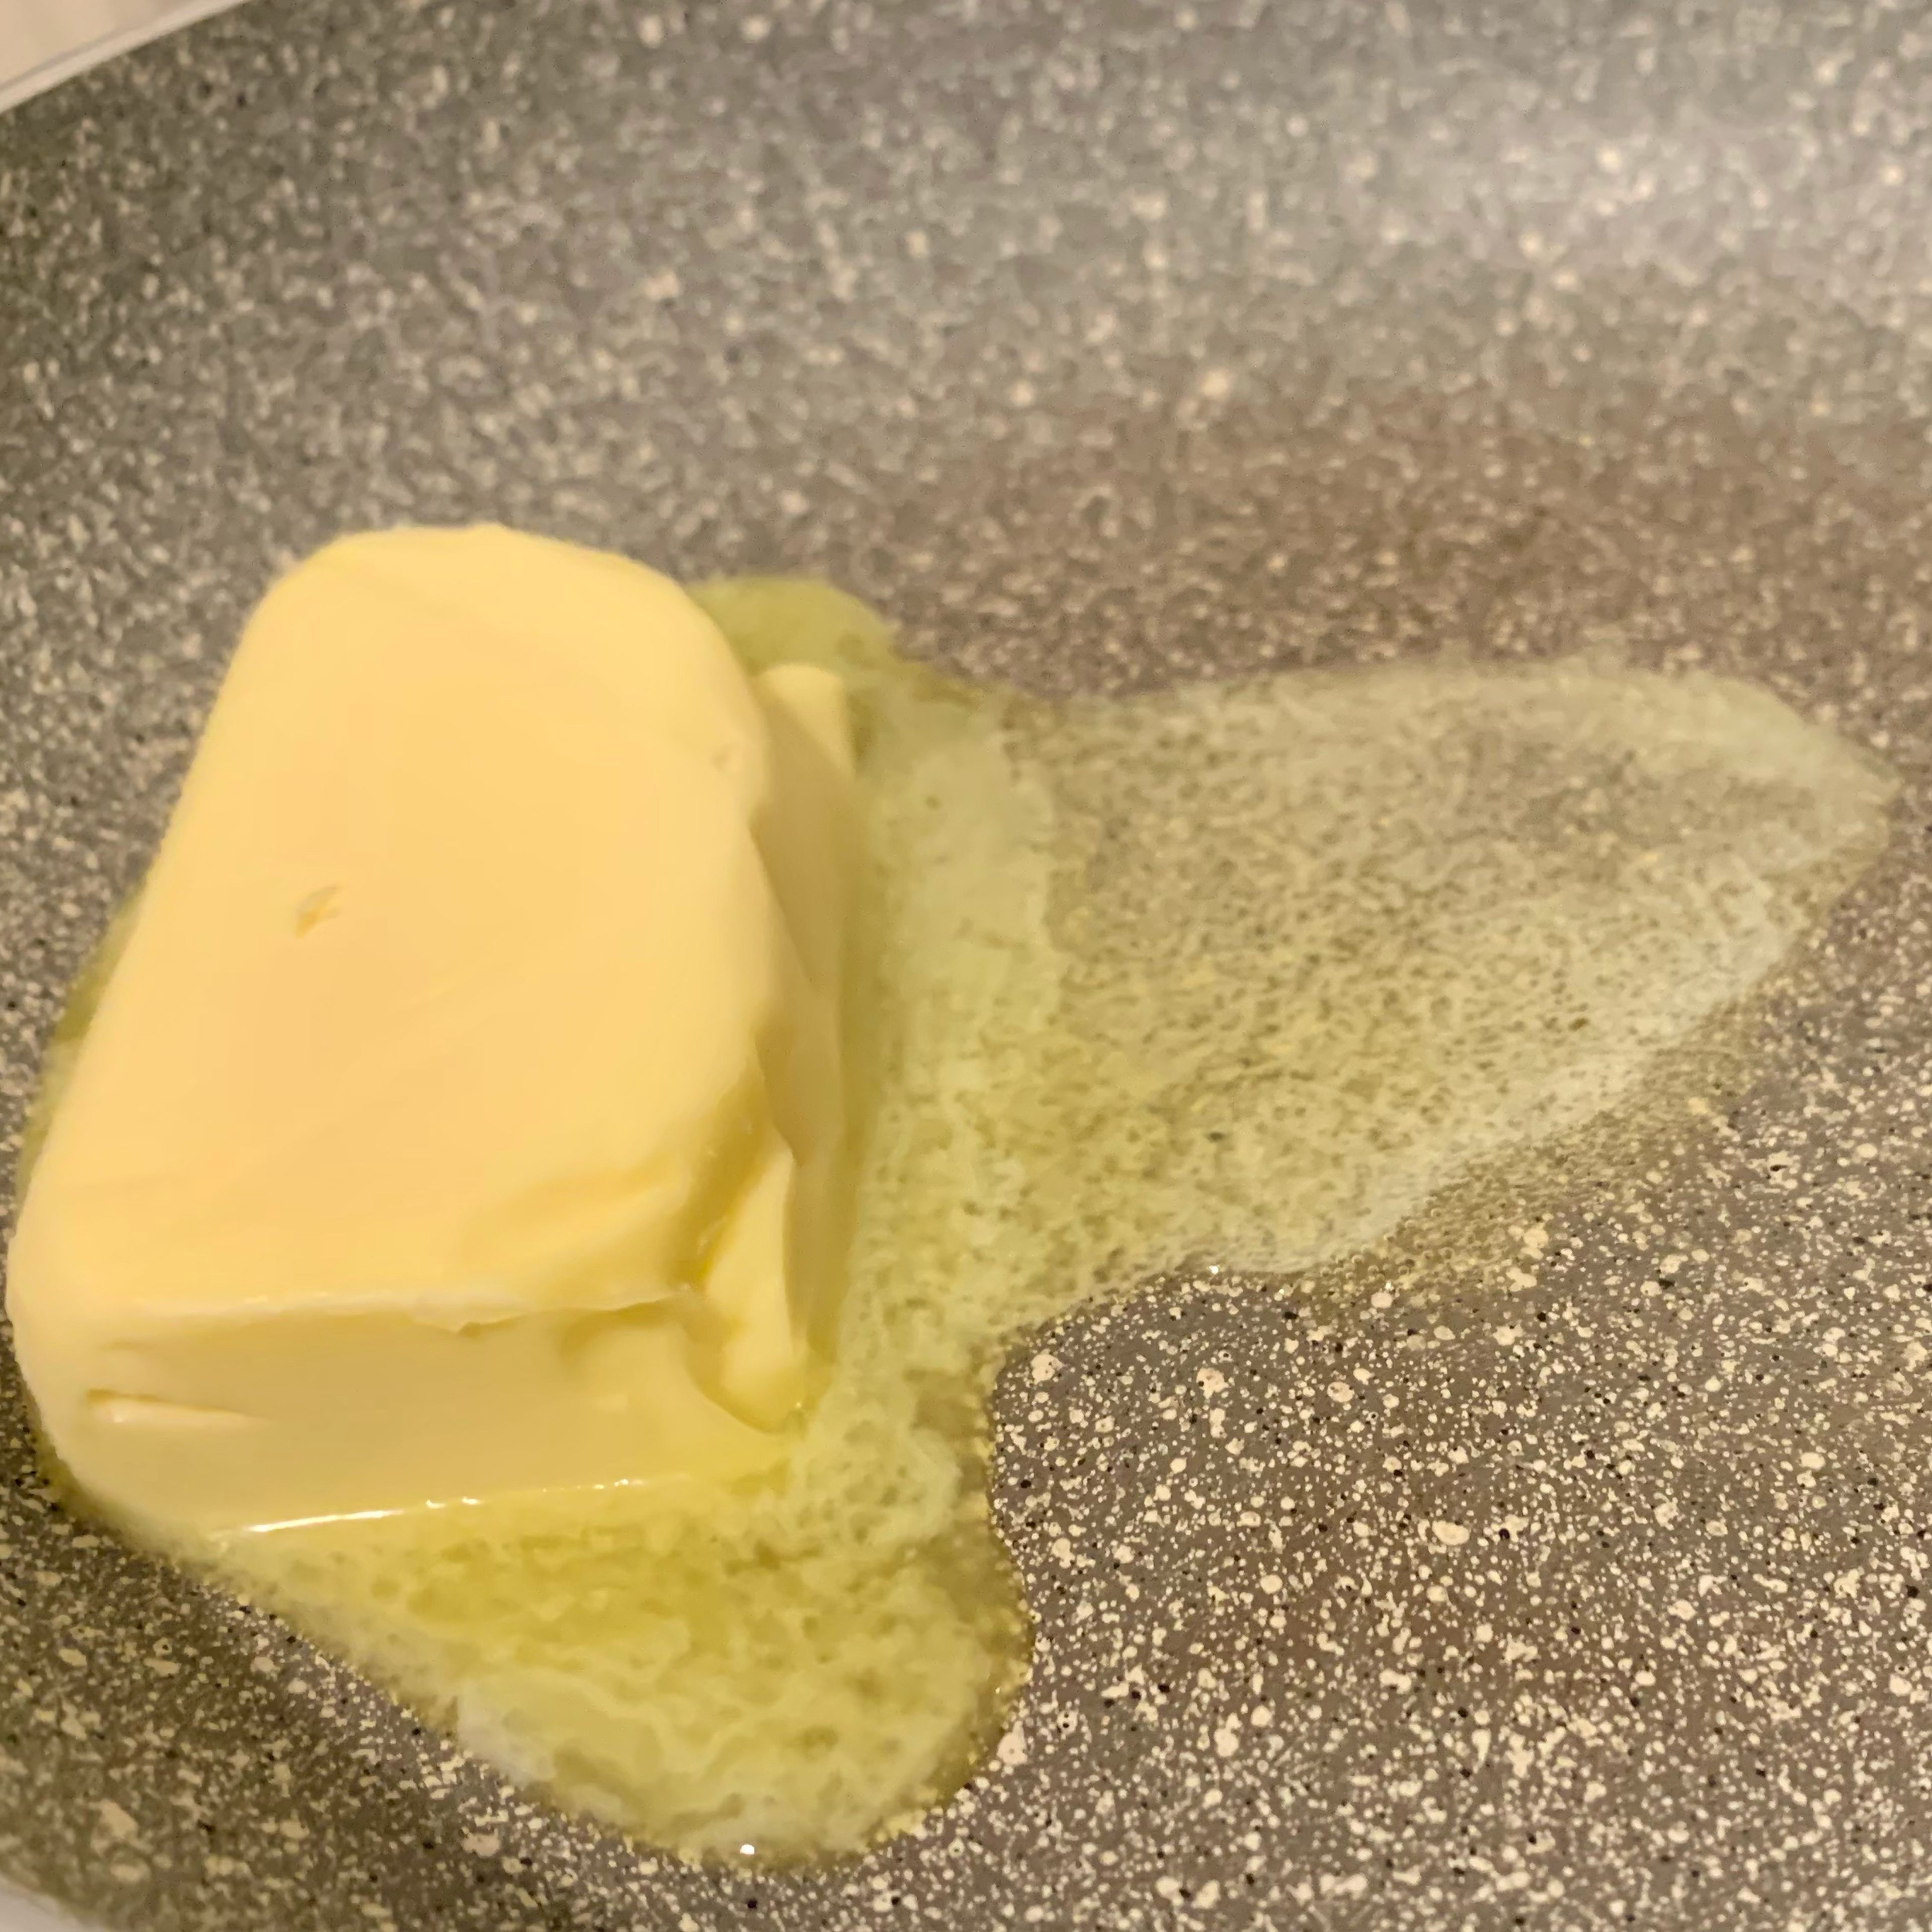 Butter schmelzen - geringe Hitze, damit sie nicht anbrennt